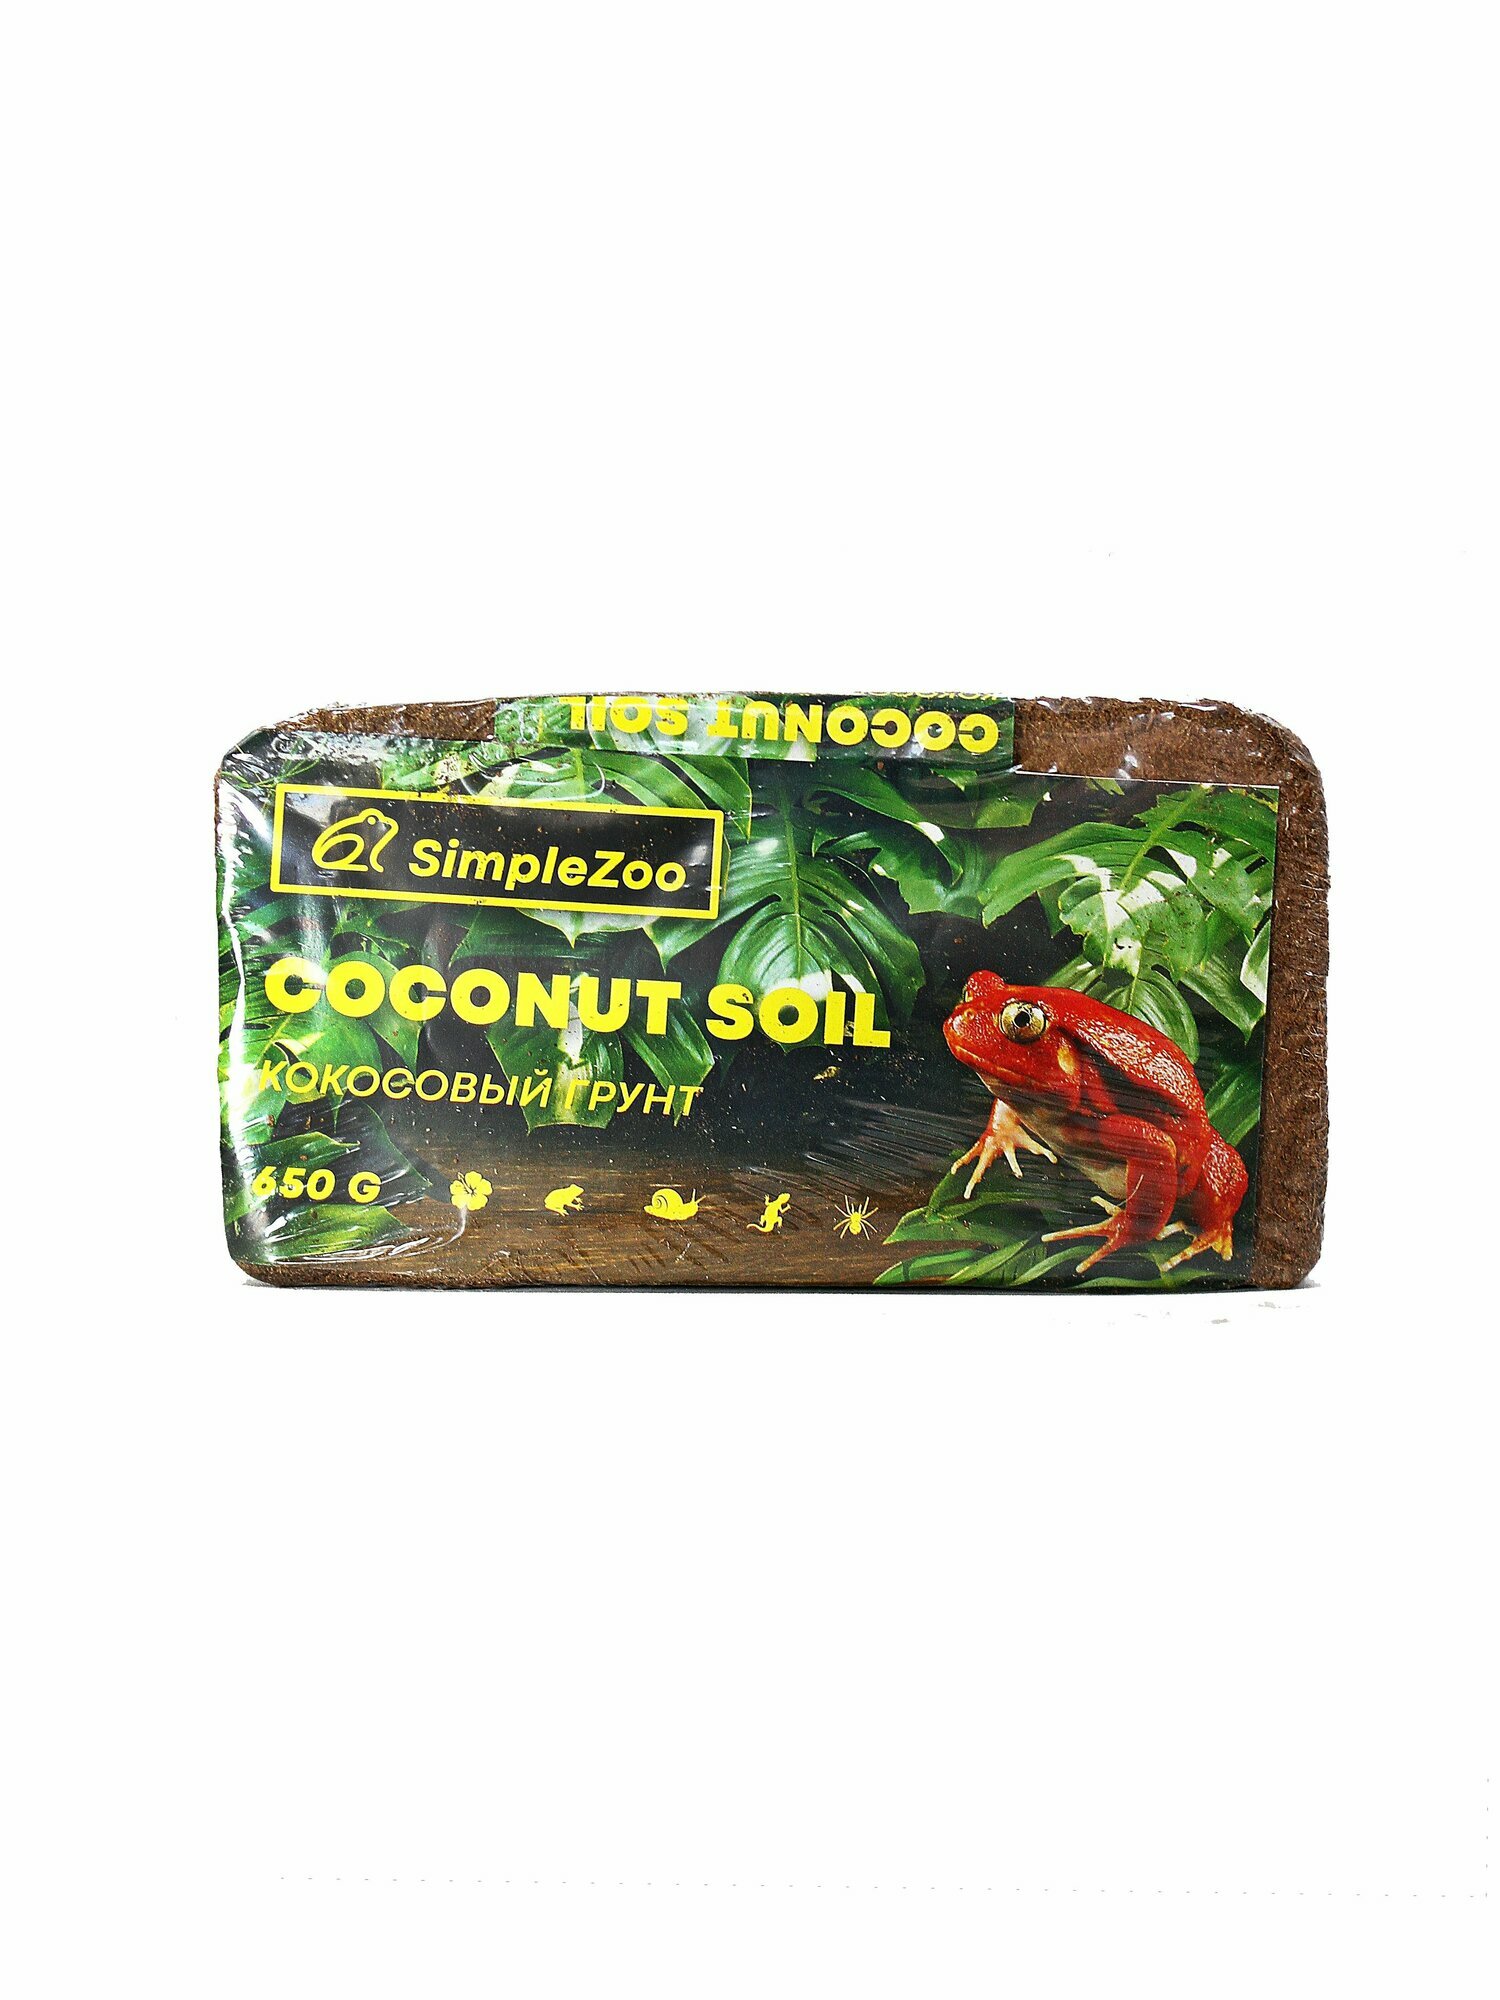 Кокосовый грунт для террариума и рептилий Simple Zoo крошка, брикет, 650 г